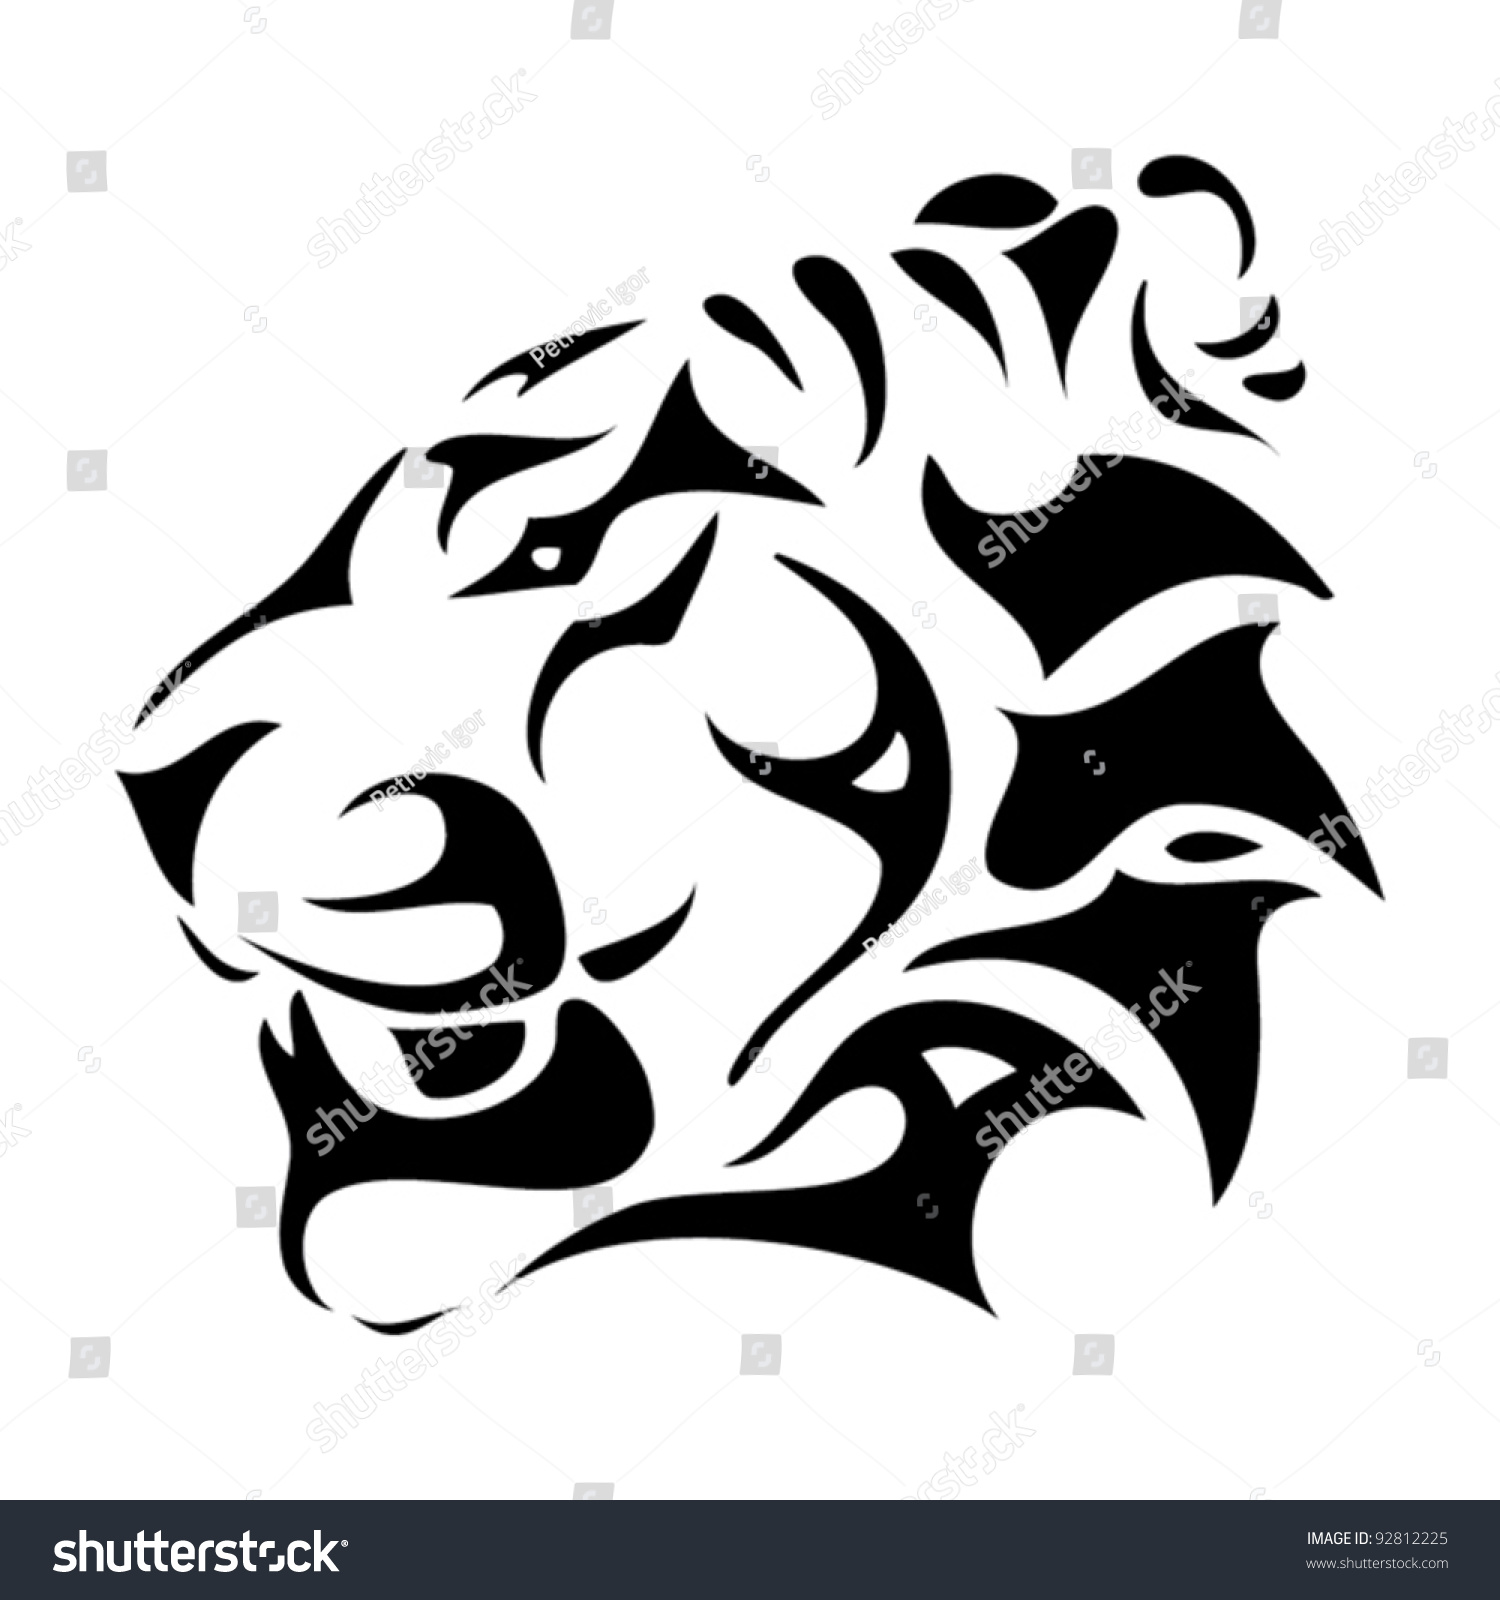 Tiger Head Tribal Vector Illustration Stock Vector 92812225 - Shutterstock